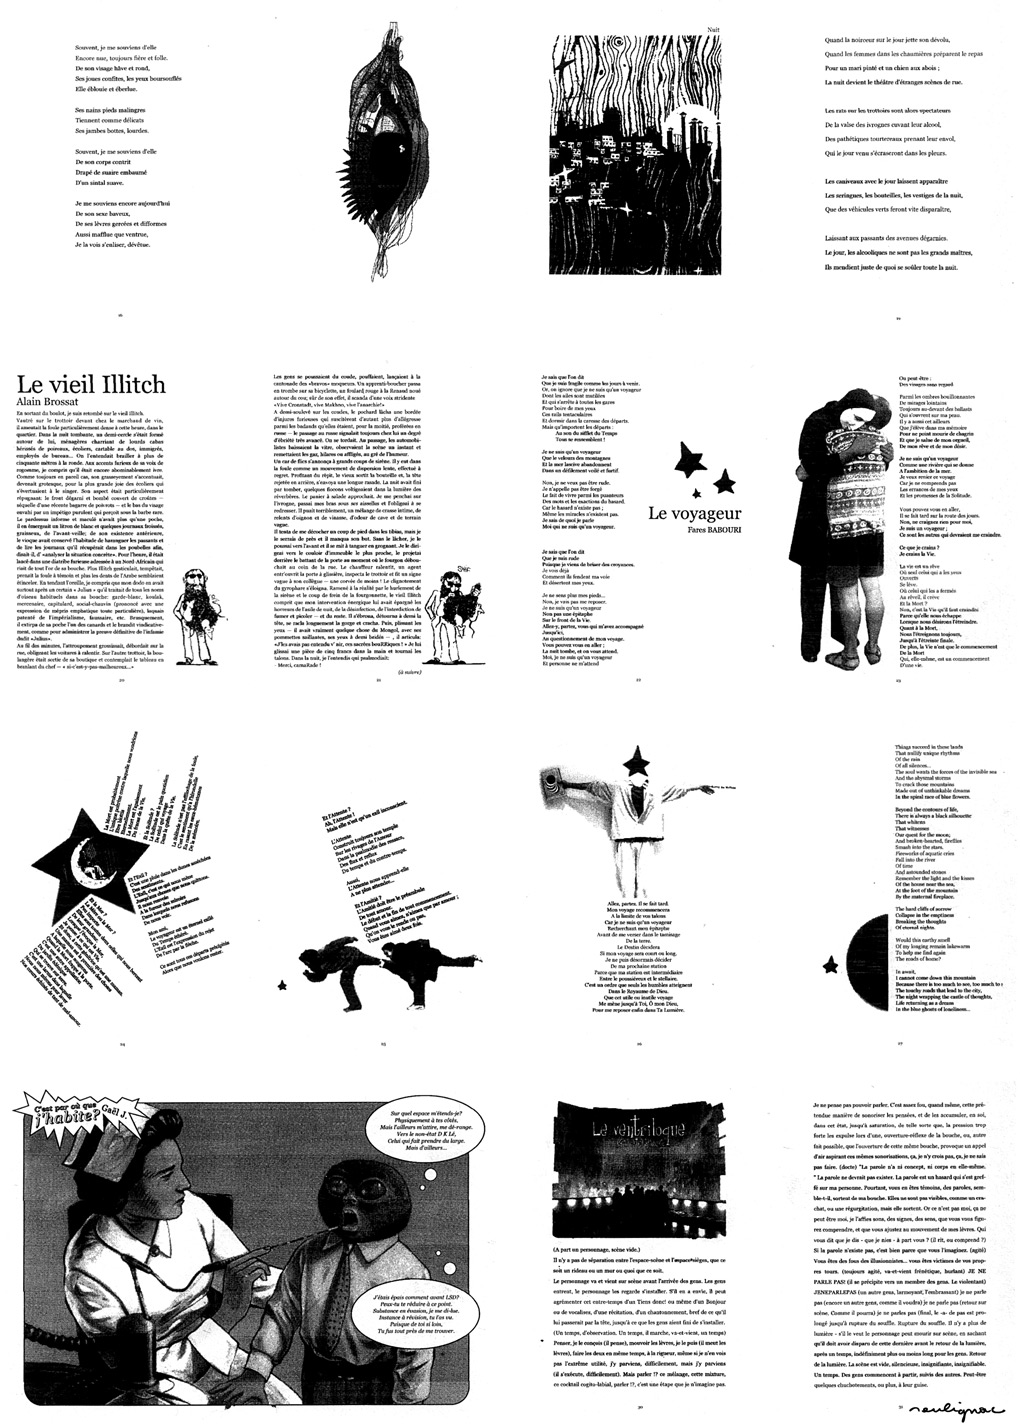 Francois Soulignac - Revue Jeunèse - Université Paris 8 - University of Paris 8 - Print contact sheets thumbnails